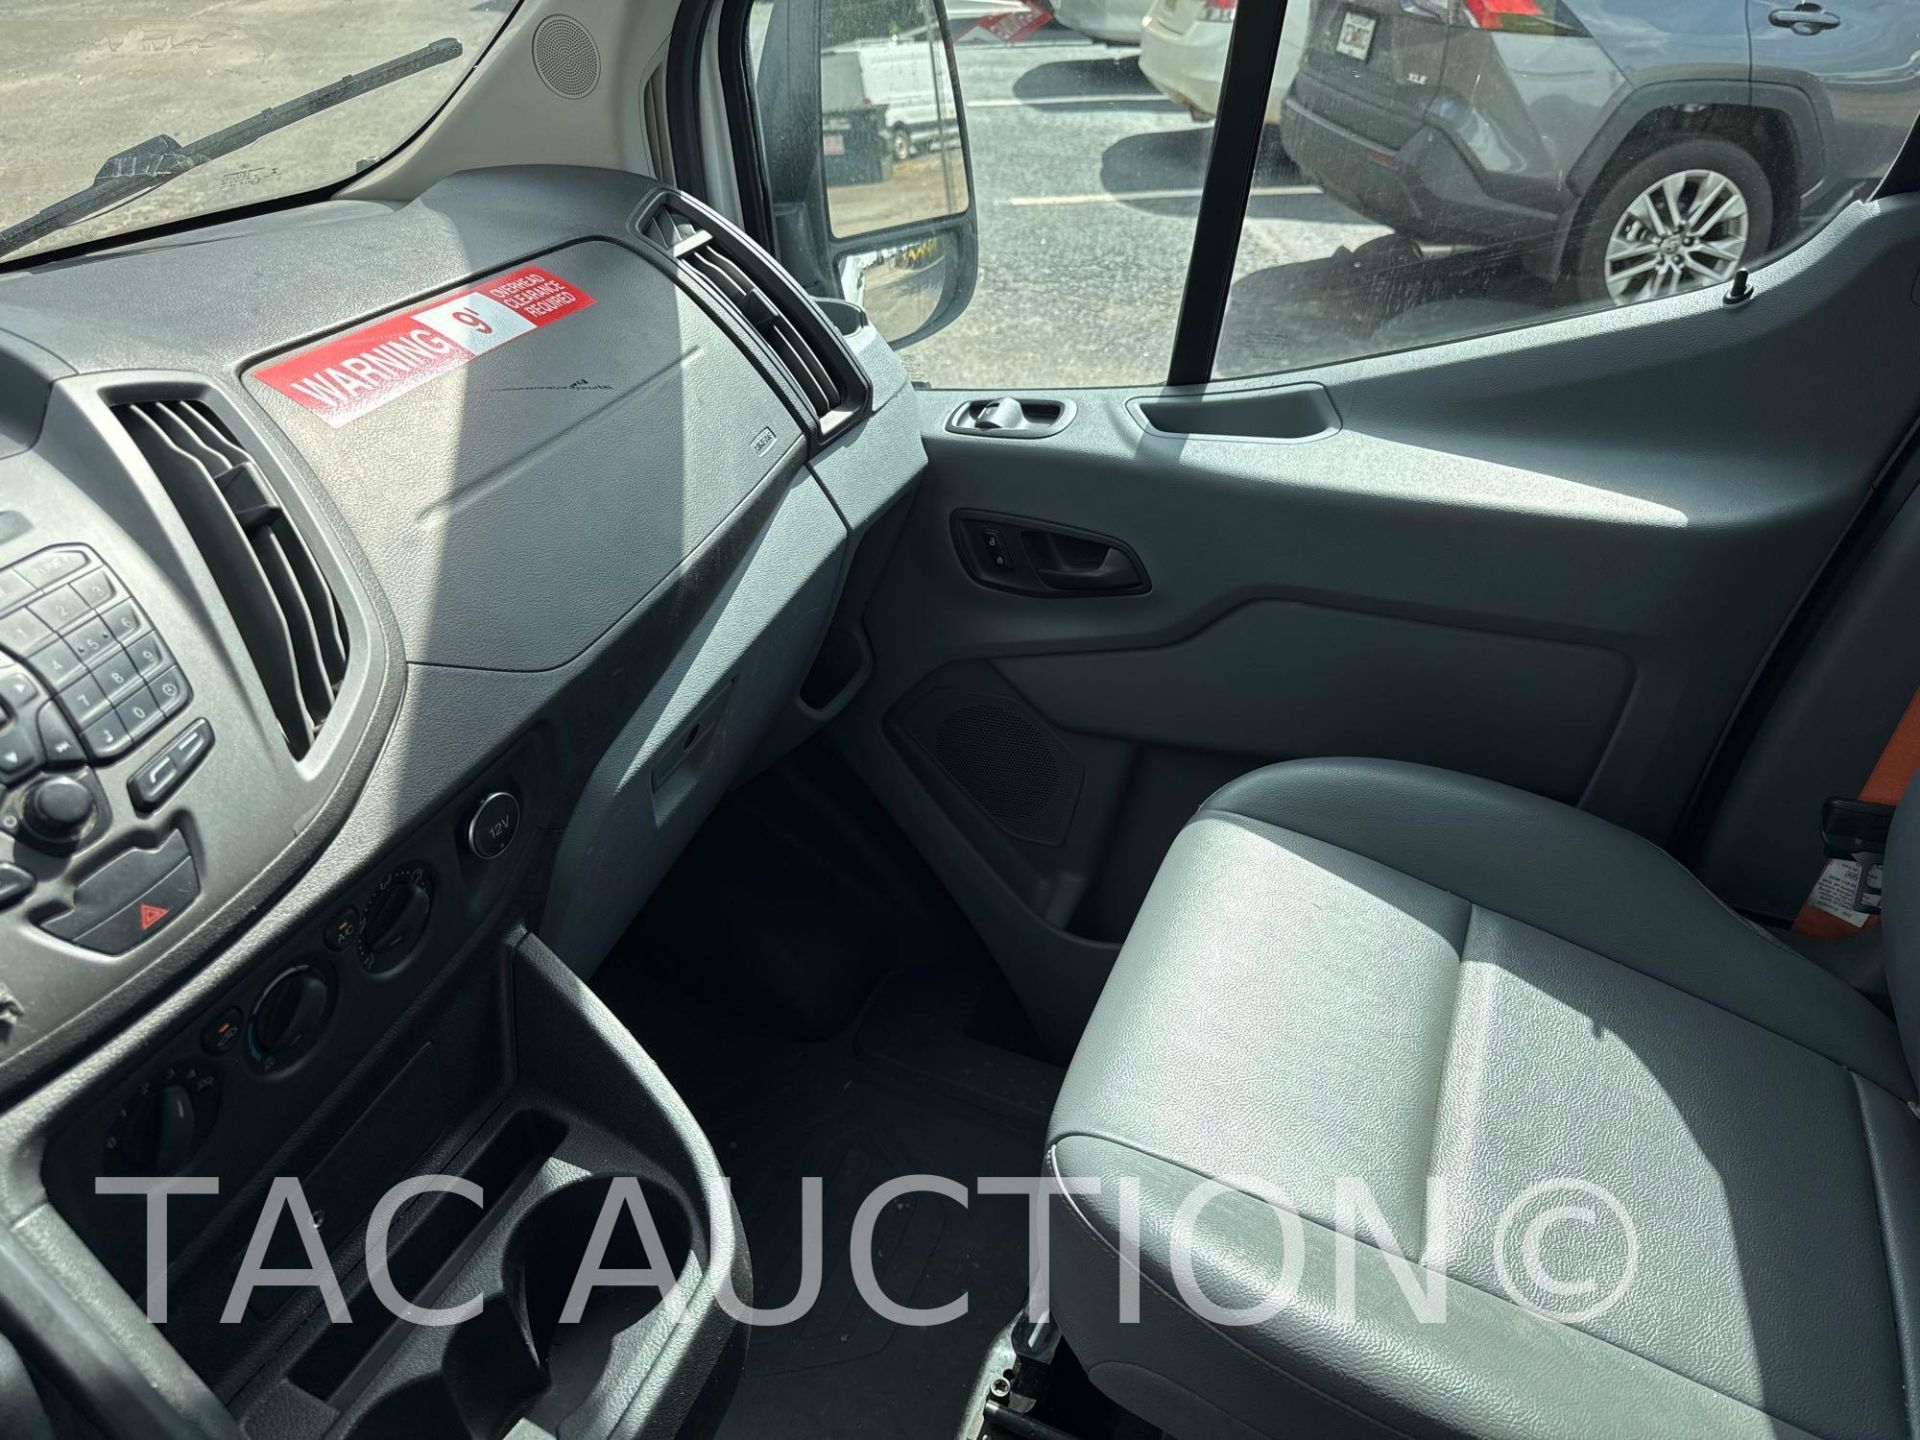 2019 Ford Transit 150 Cargo Van - Image 15 of 43